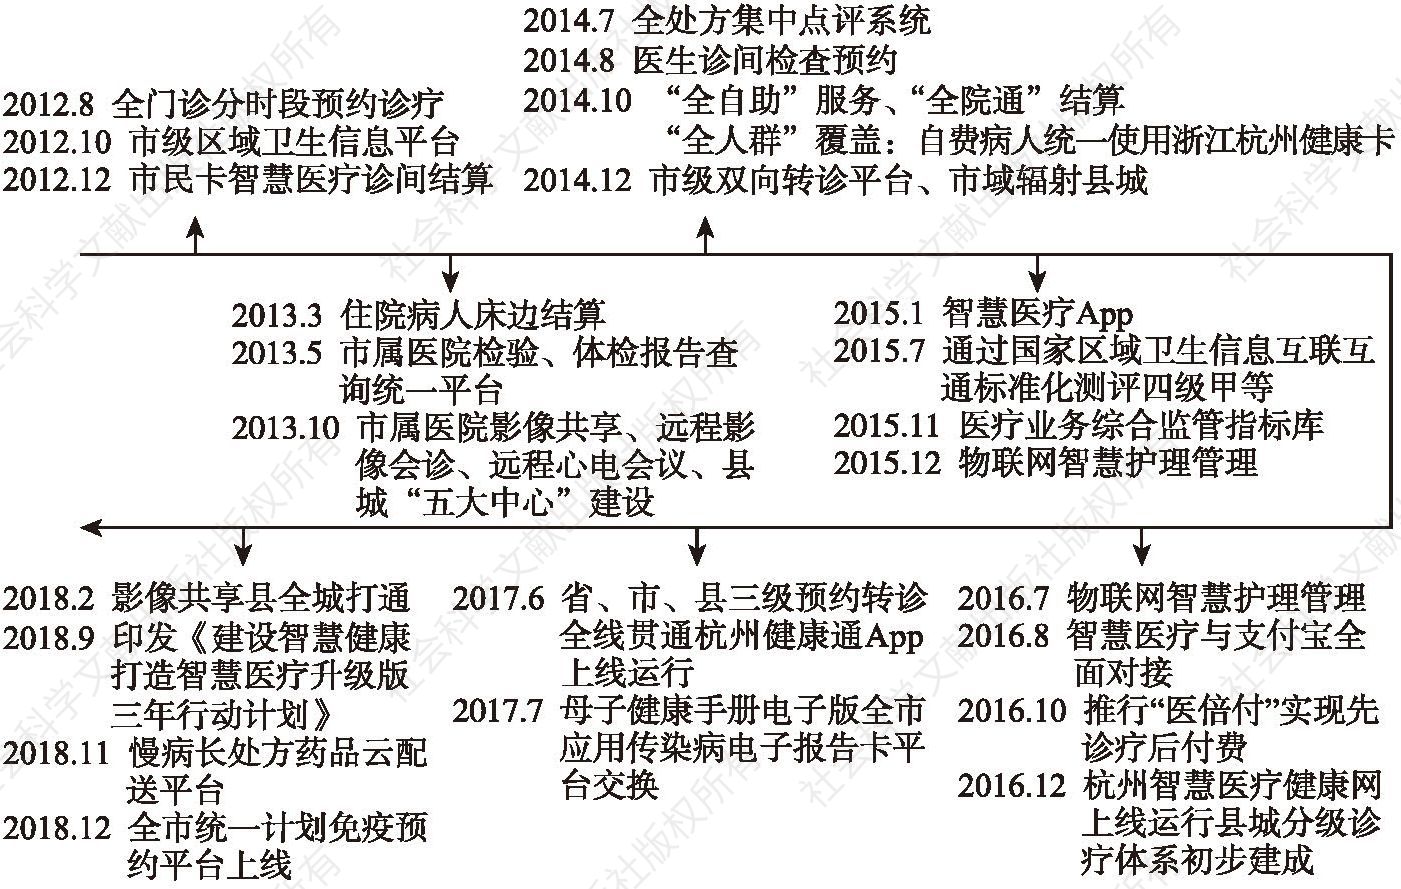 图7-1 杭州市智慧医疗的发展历程